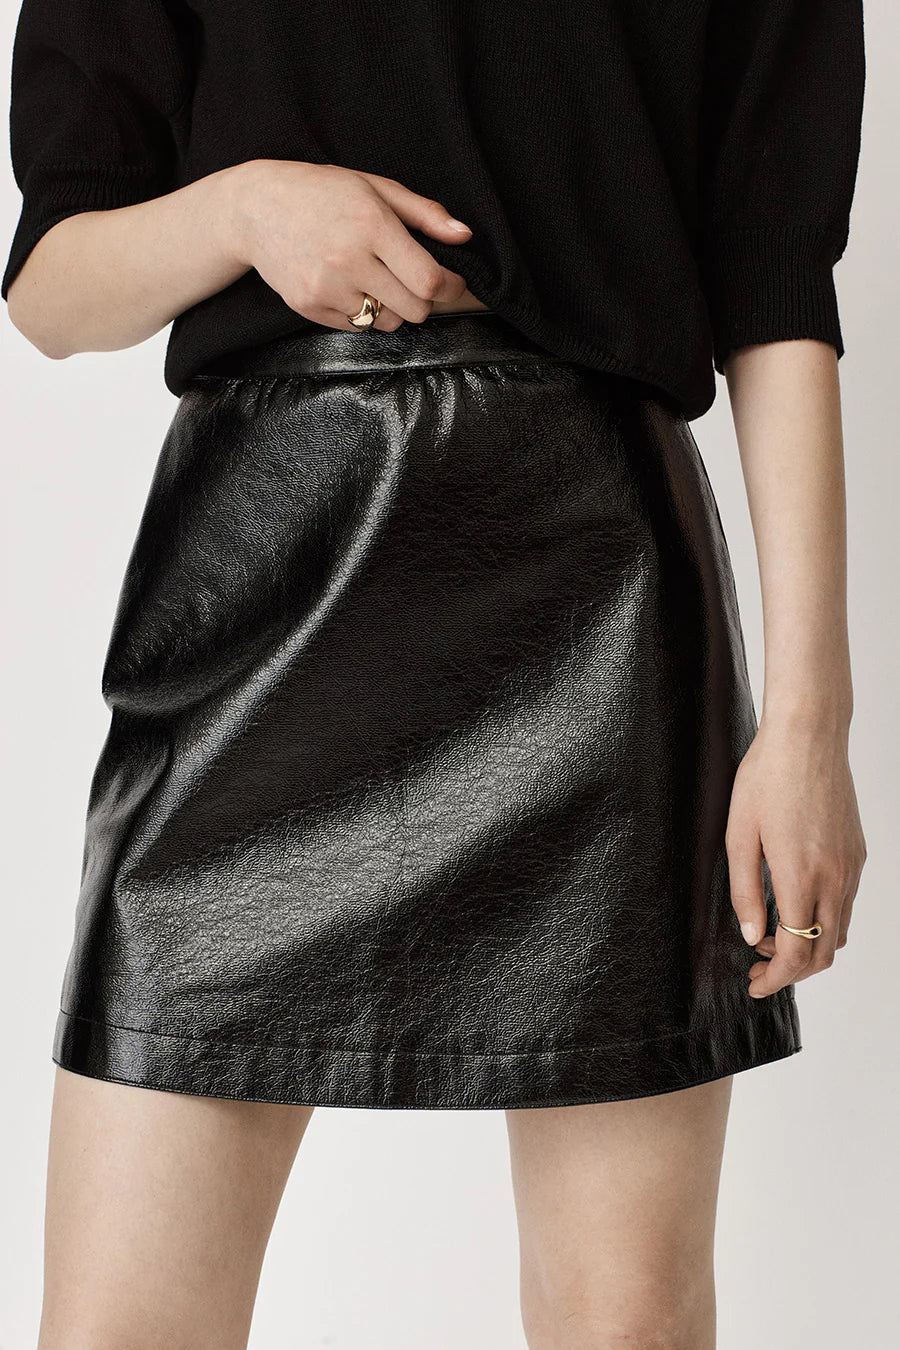 Shiny black PU A line mini skirt